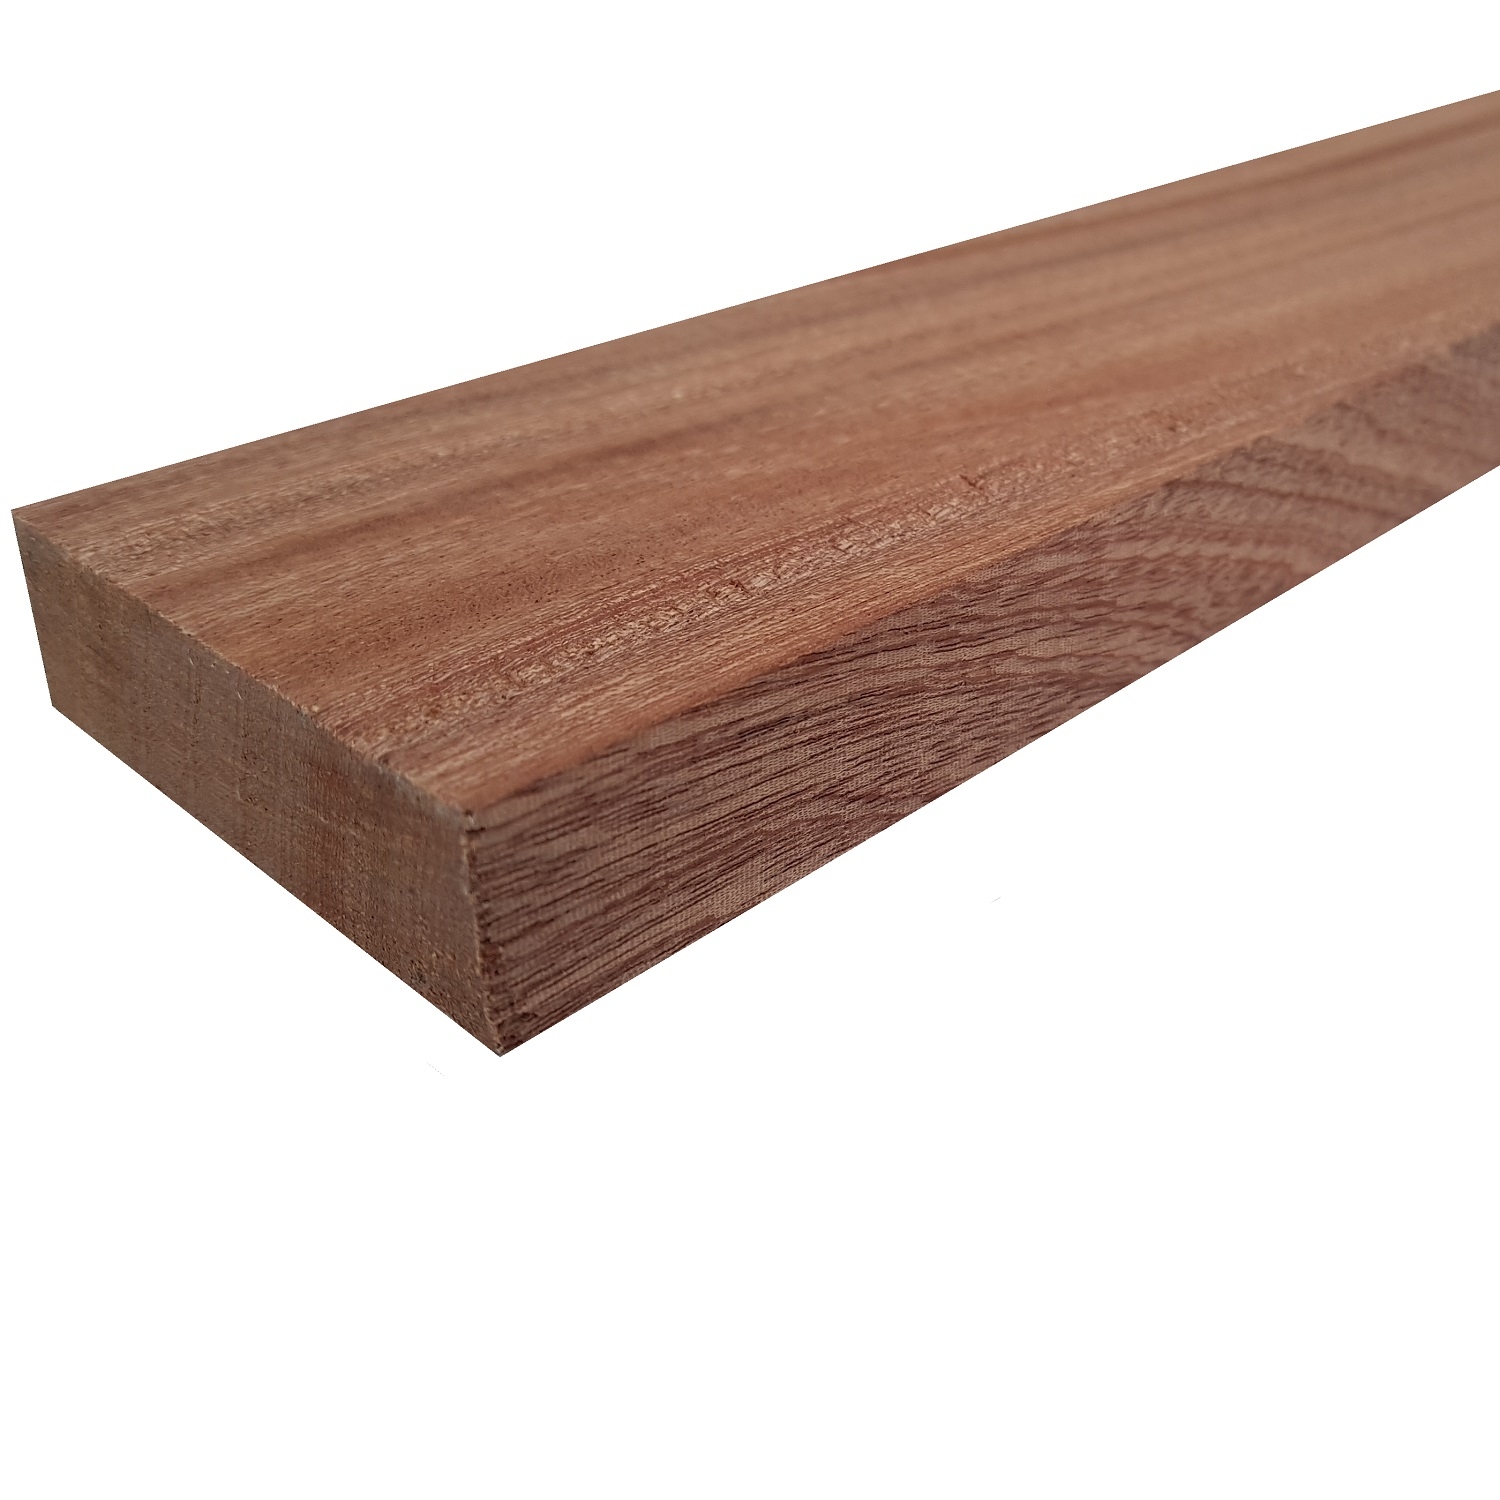 Tavola legno di Mogano Refilato Piallato mm 21 x 230 x 3000